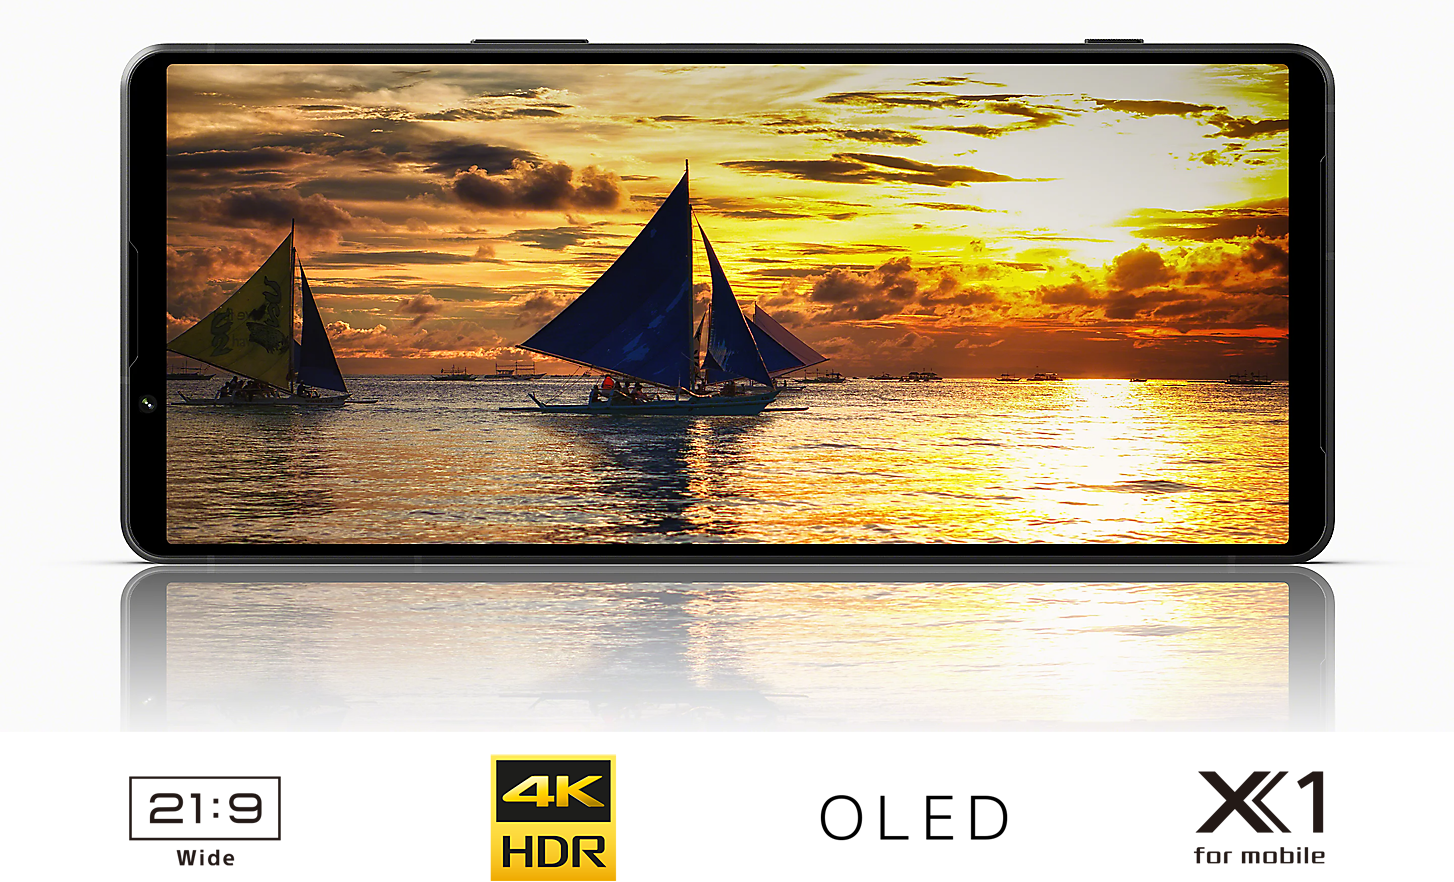 Xperia 1V:n näytöllä näkyy kuva purjeveneestä auringonlaskun aikaan, alla logot 21:9 Wide, 4K HDR, OLED ja X1 for mobile